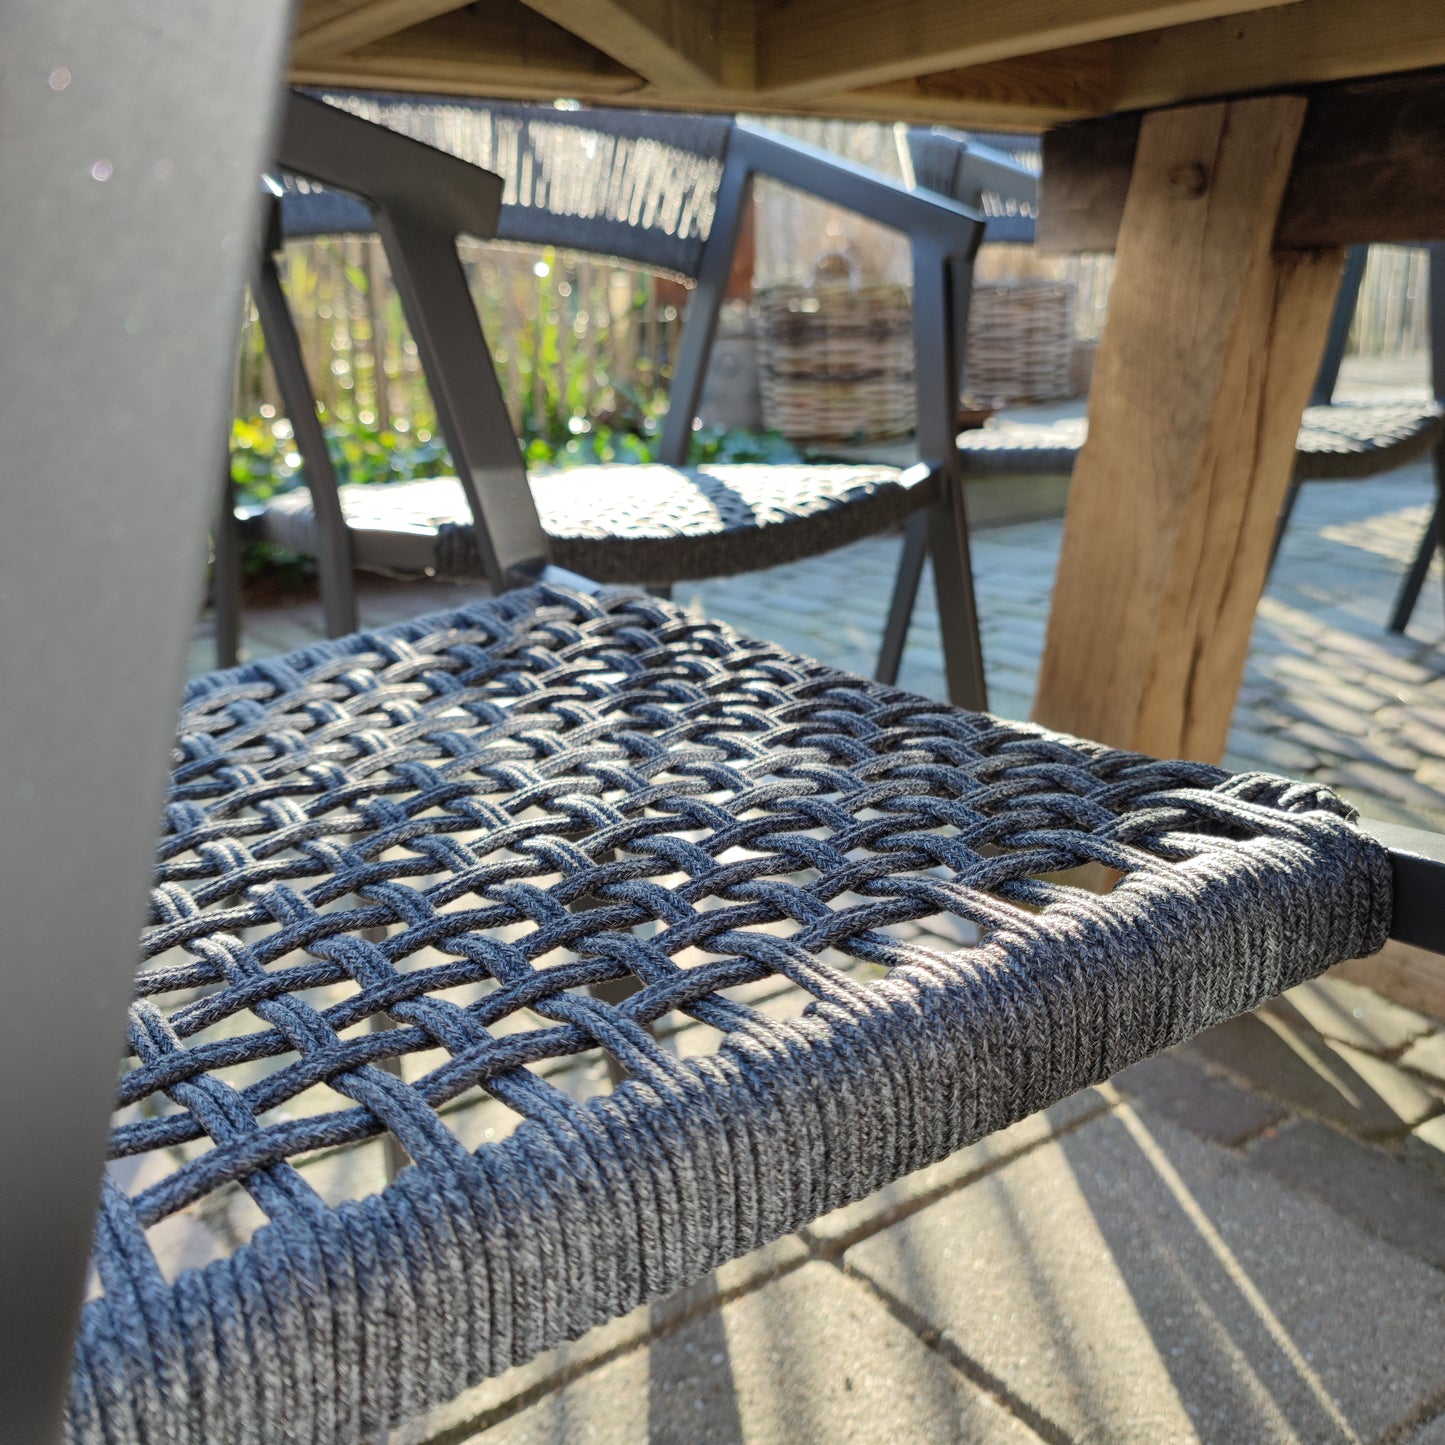 Outdoor-Stuhl Aluminiumseil